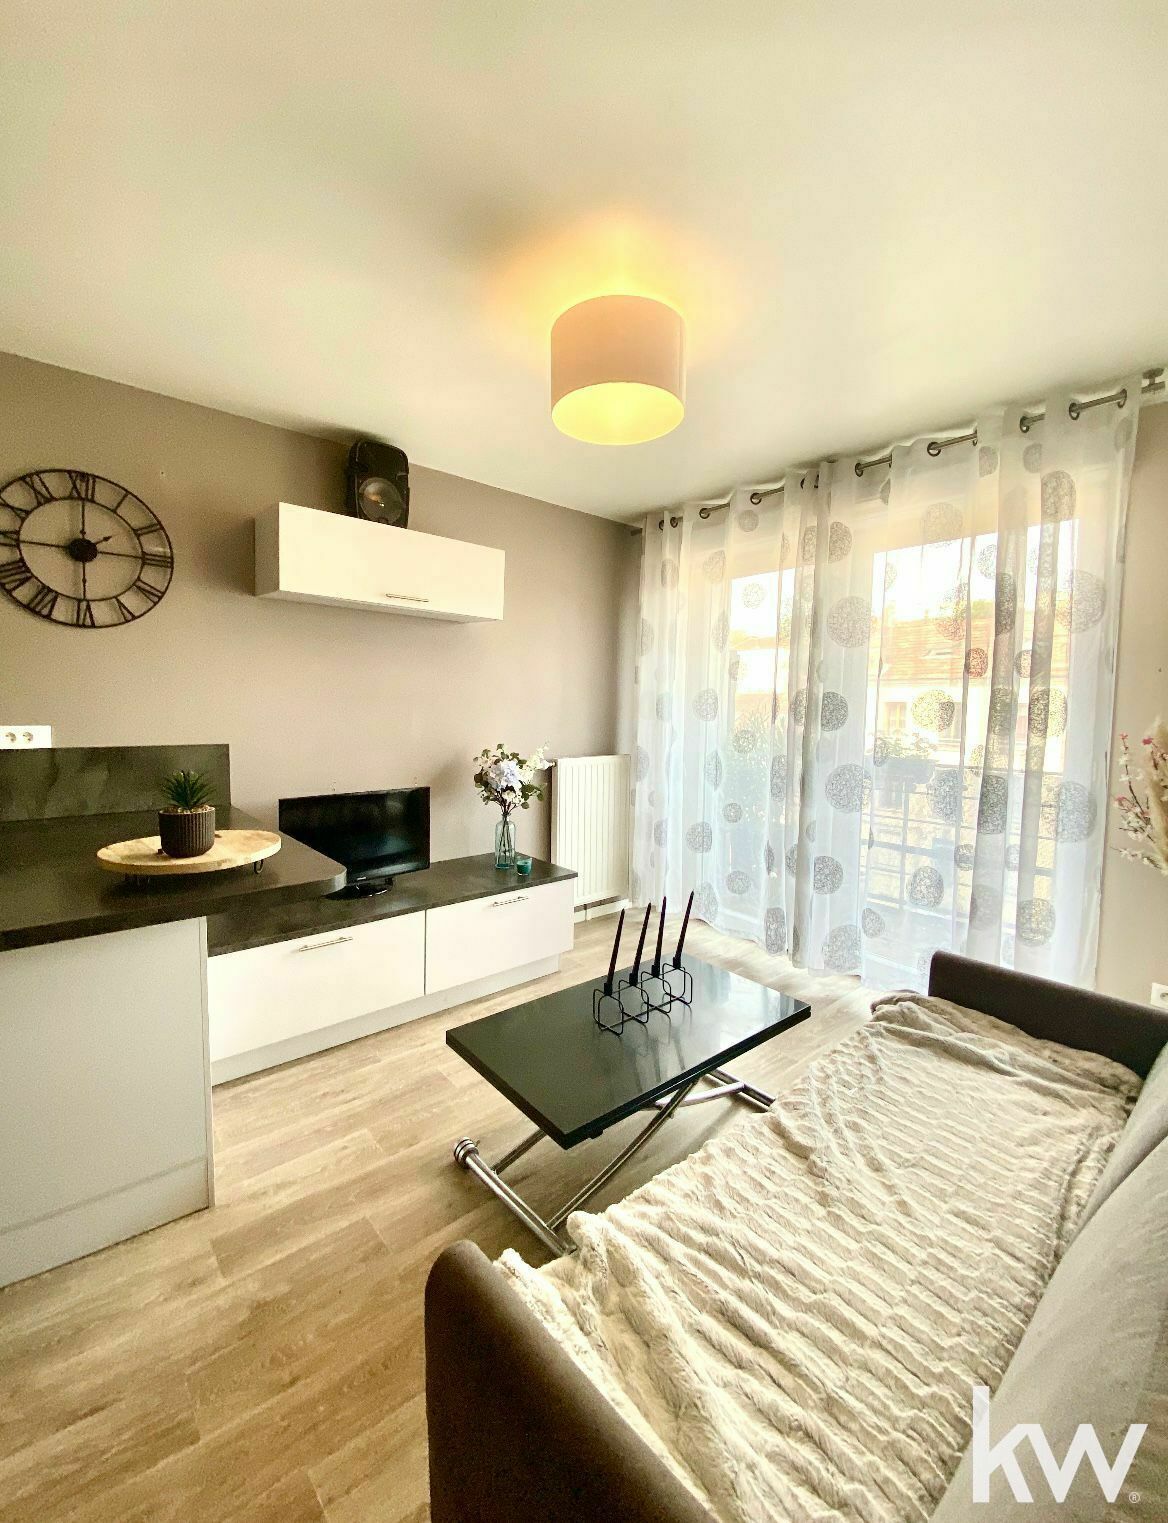 LOCATION d'un appartement 2 pièces (37 m²) à CORBEIL-ESSONNES